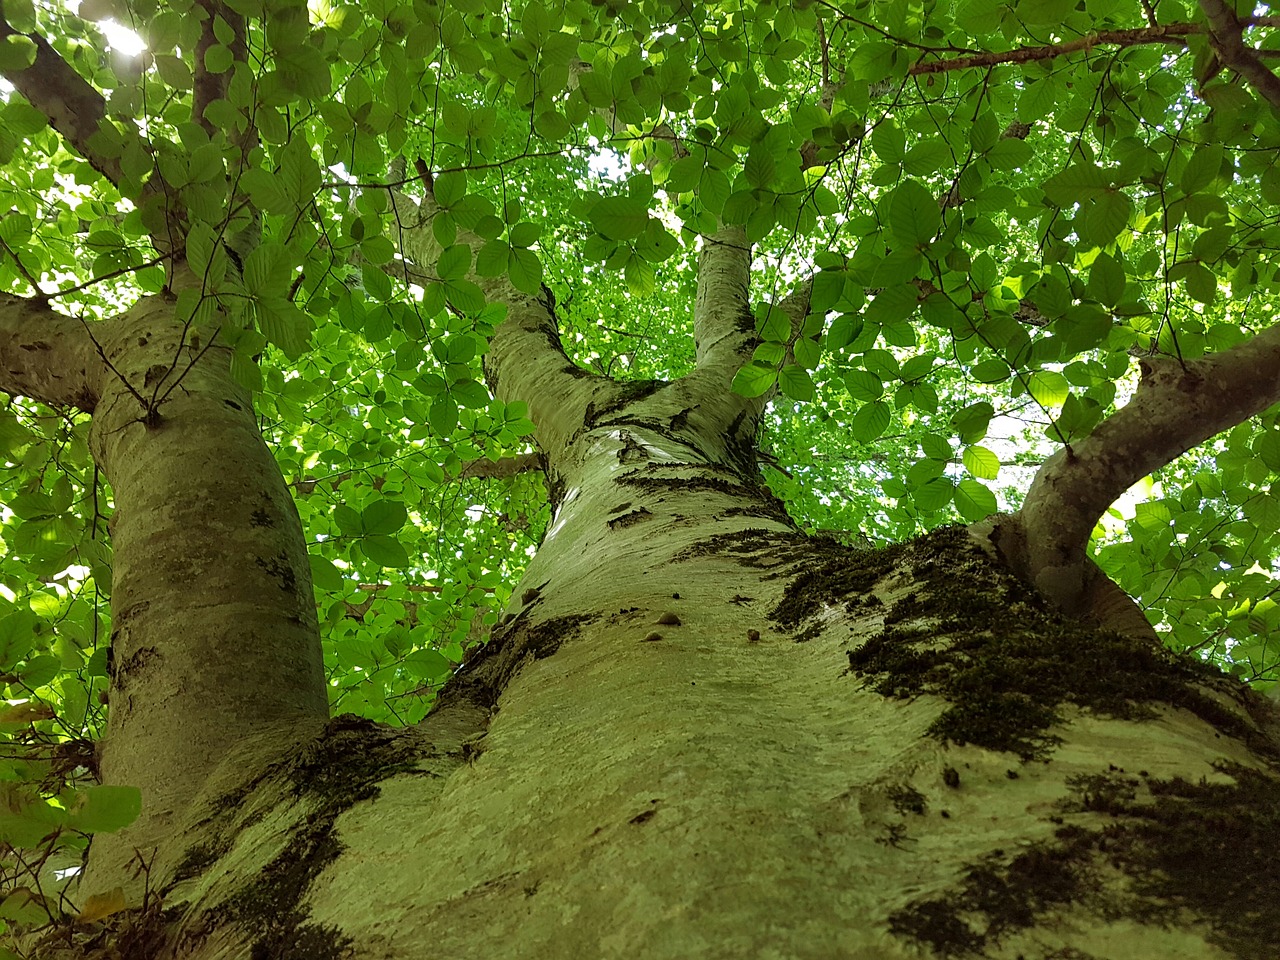 foto. albero visto dal basso, un grande tronco con dei rami che partono dal centro, la sensazione che lo rappresenta ,e quella della frescura in una calda giornata estiva.